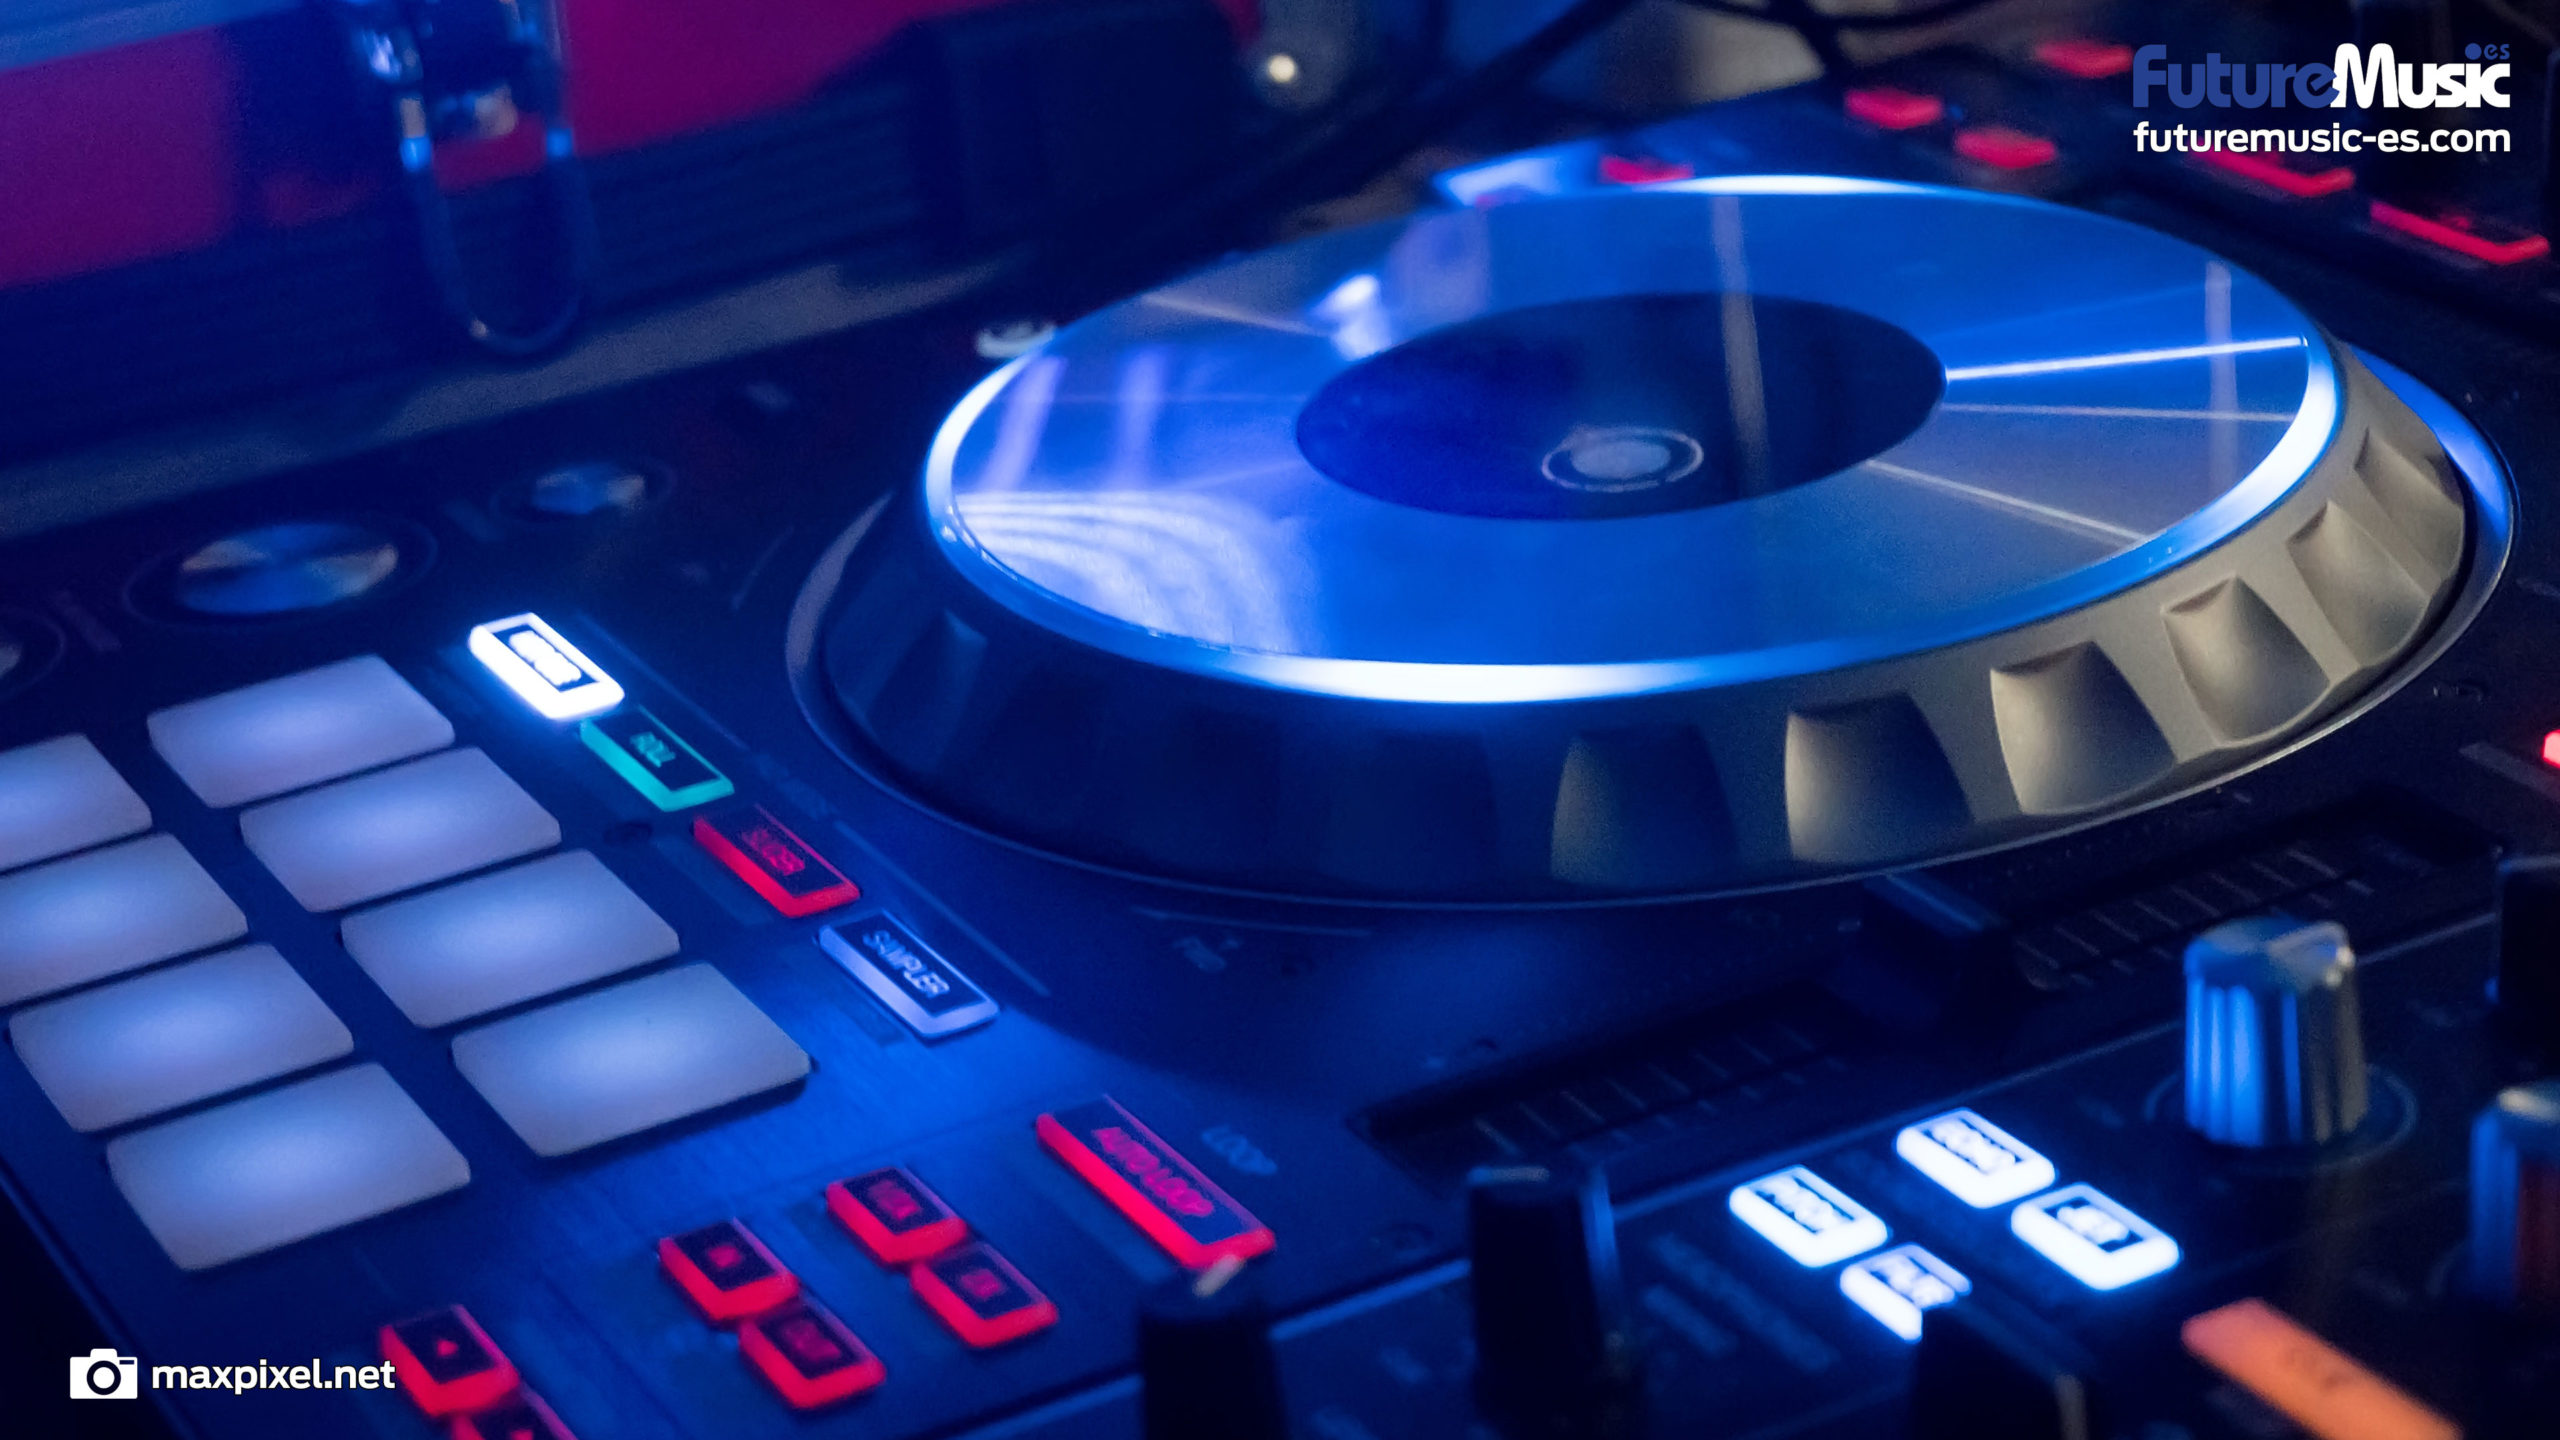 Future Music, fondos de pantalla gratis para productores y DJs -DJ digital